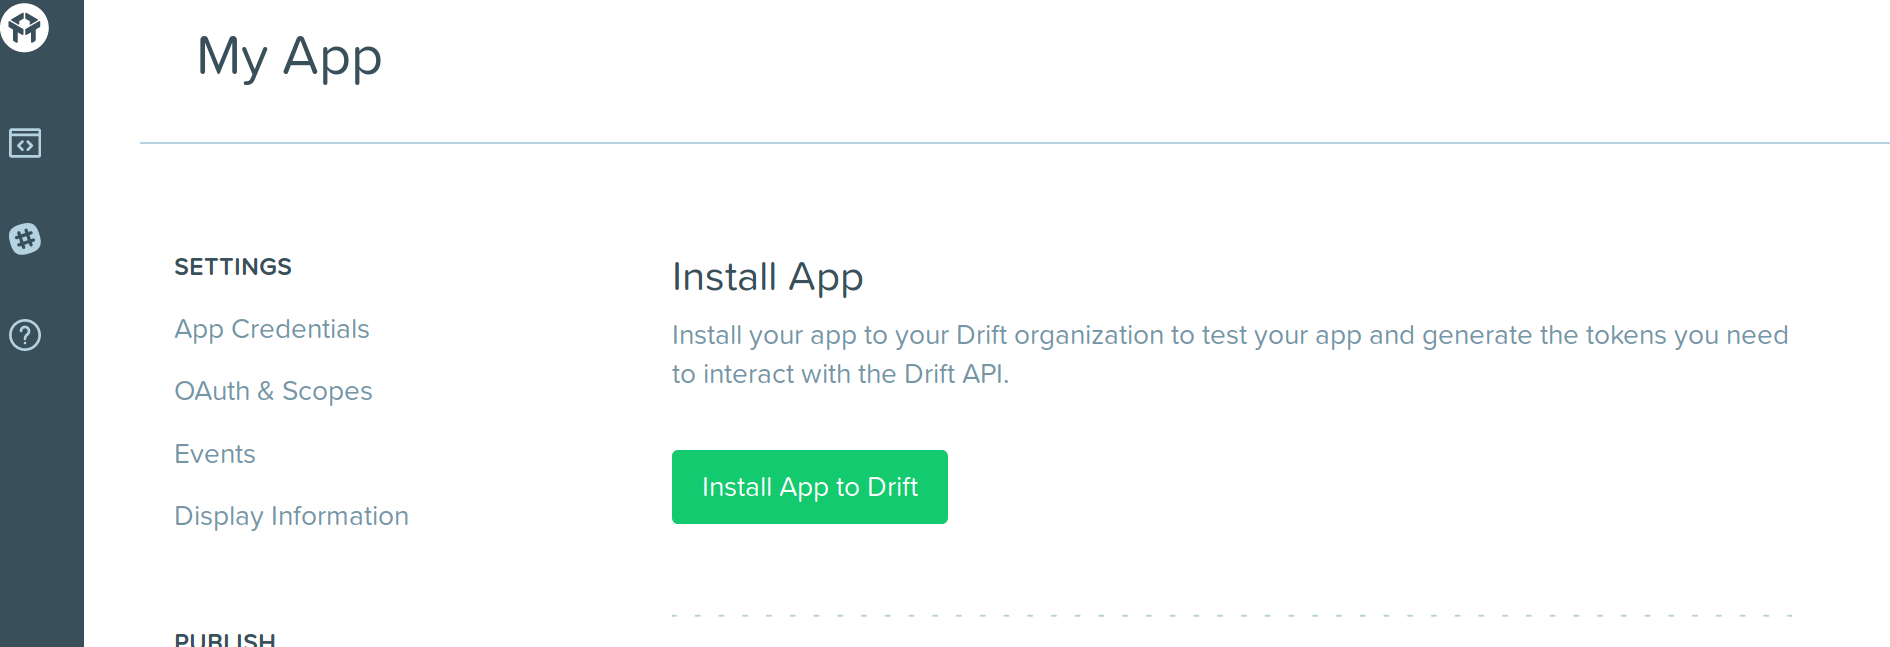 drift_integration_install